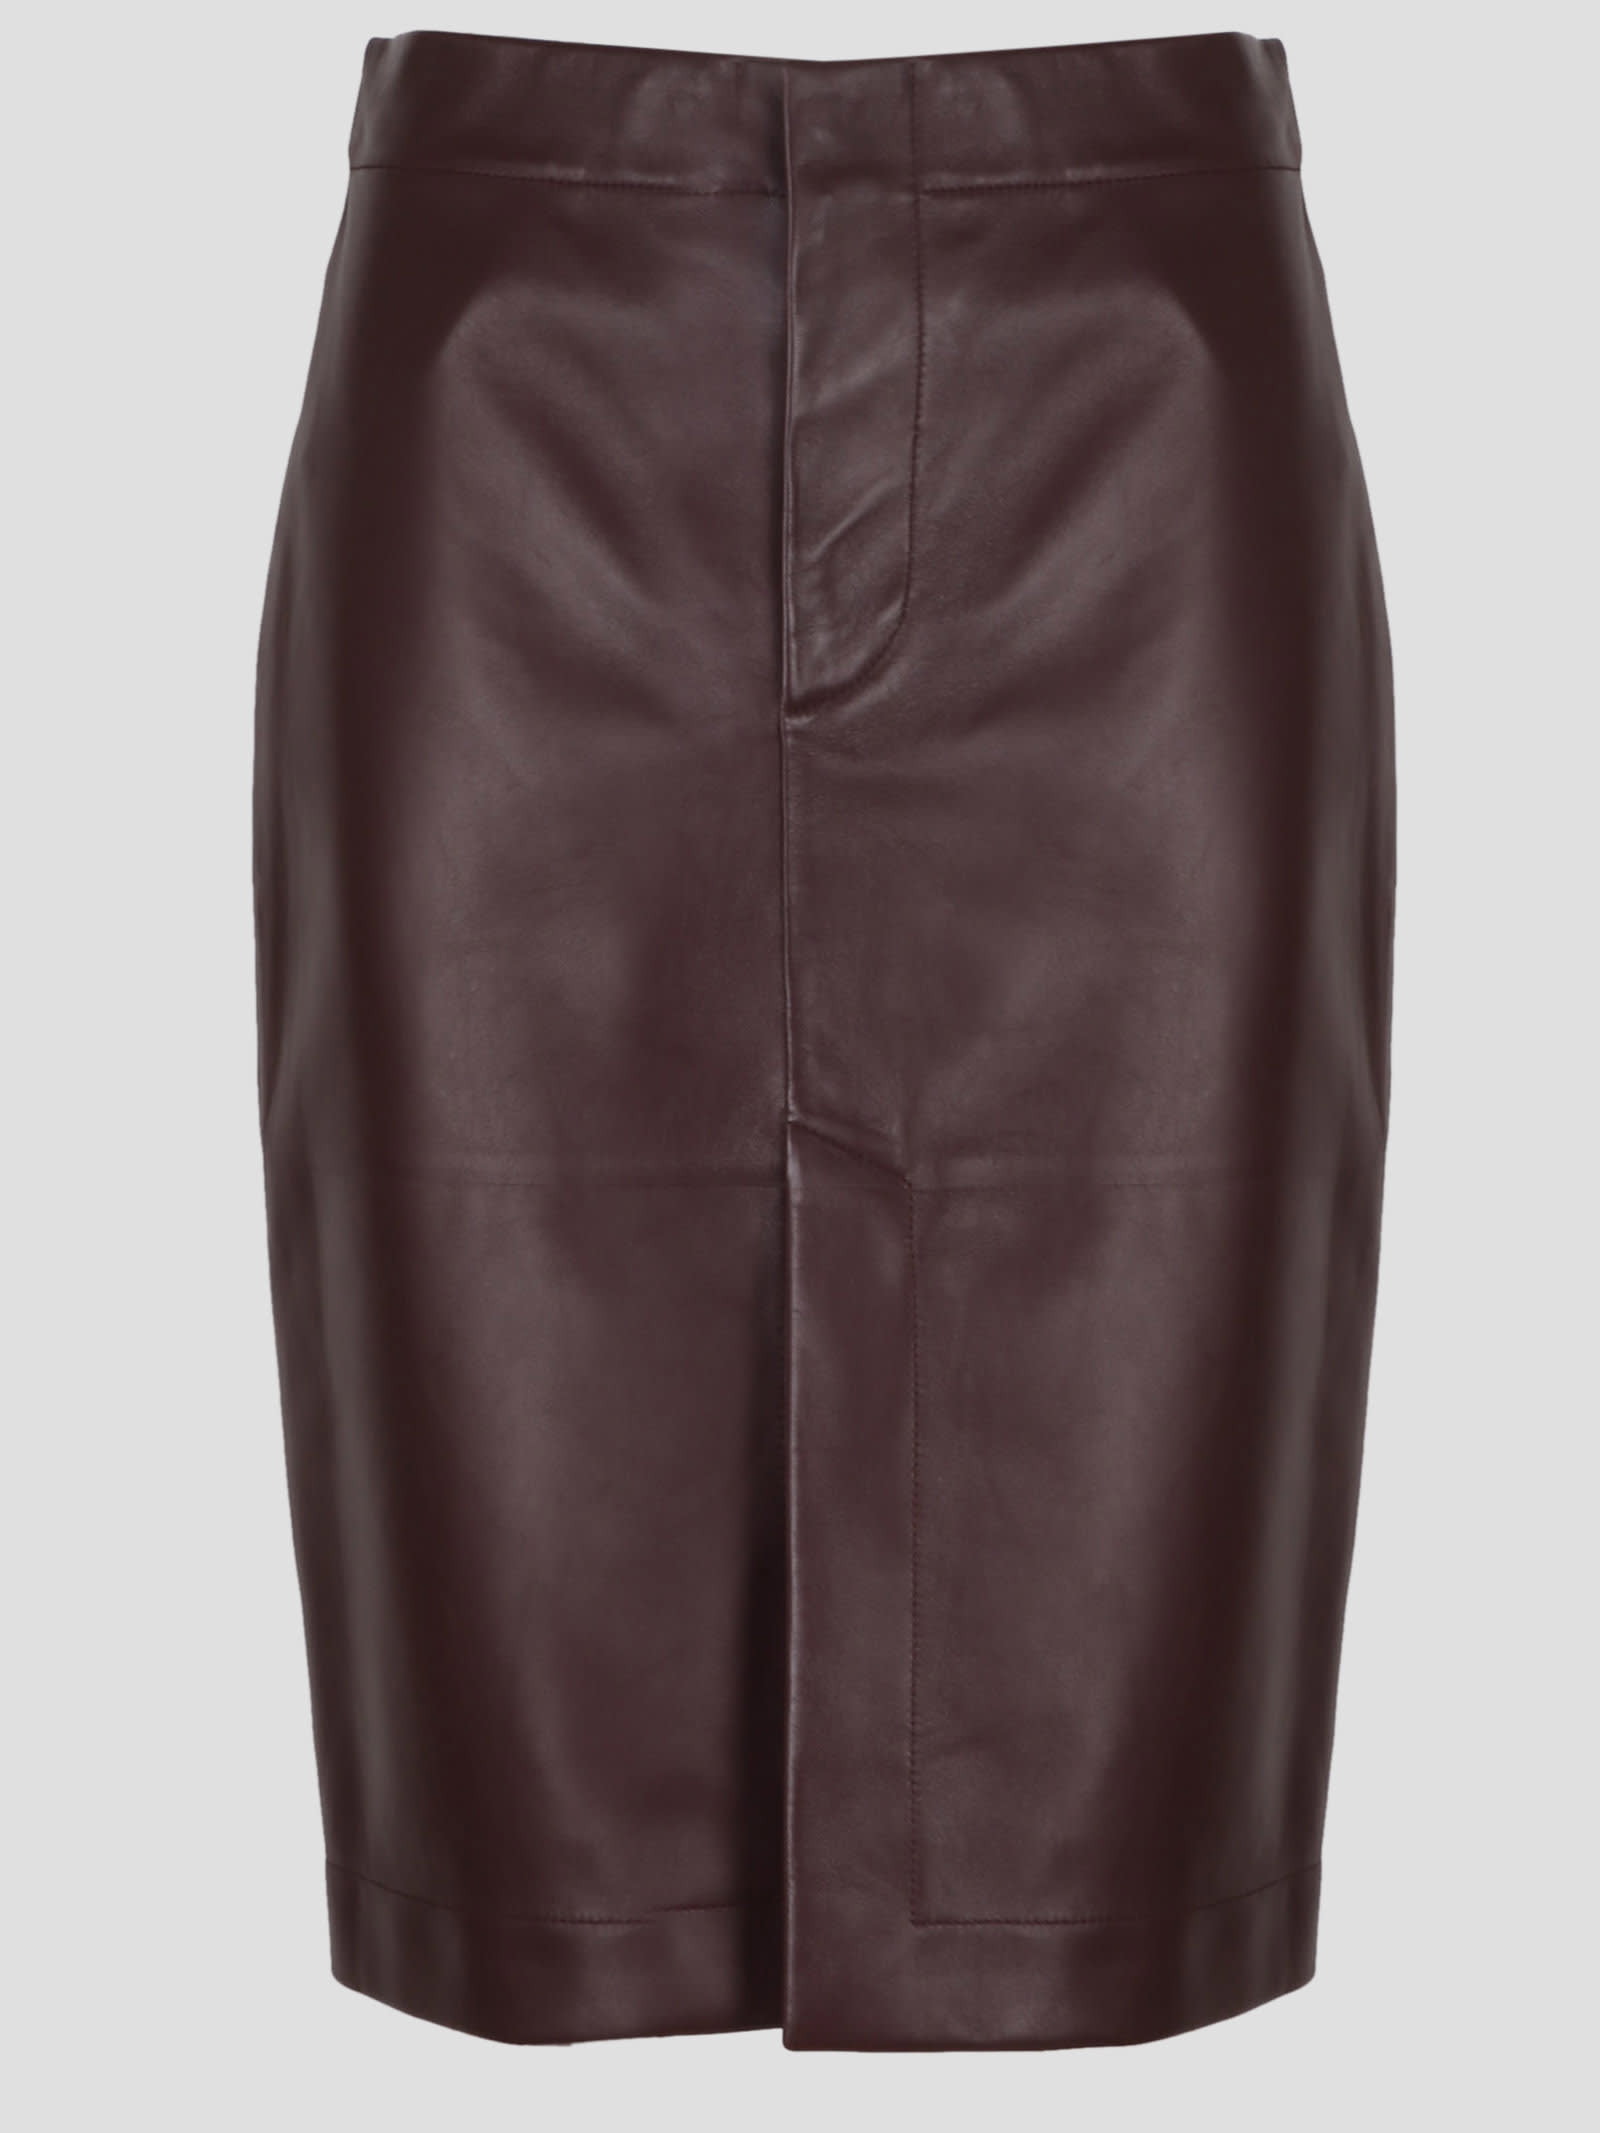 Bottega Veneta Soft Leather Skirt